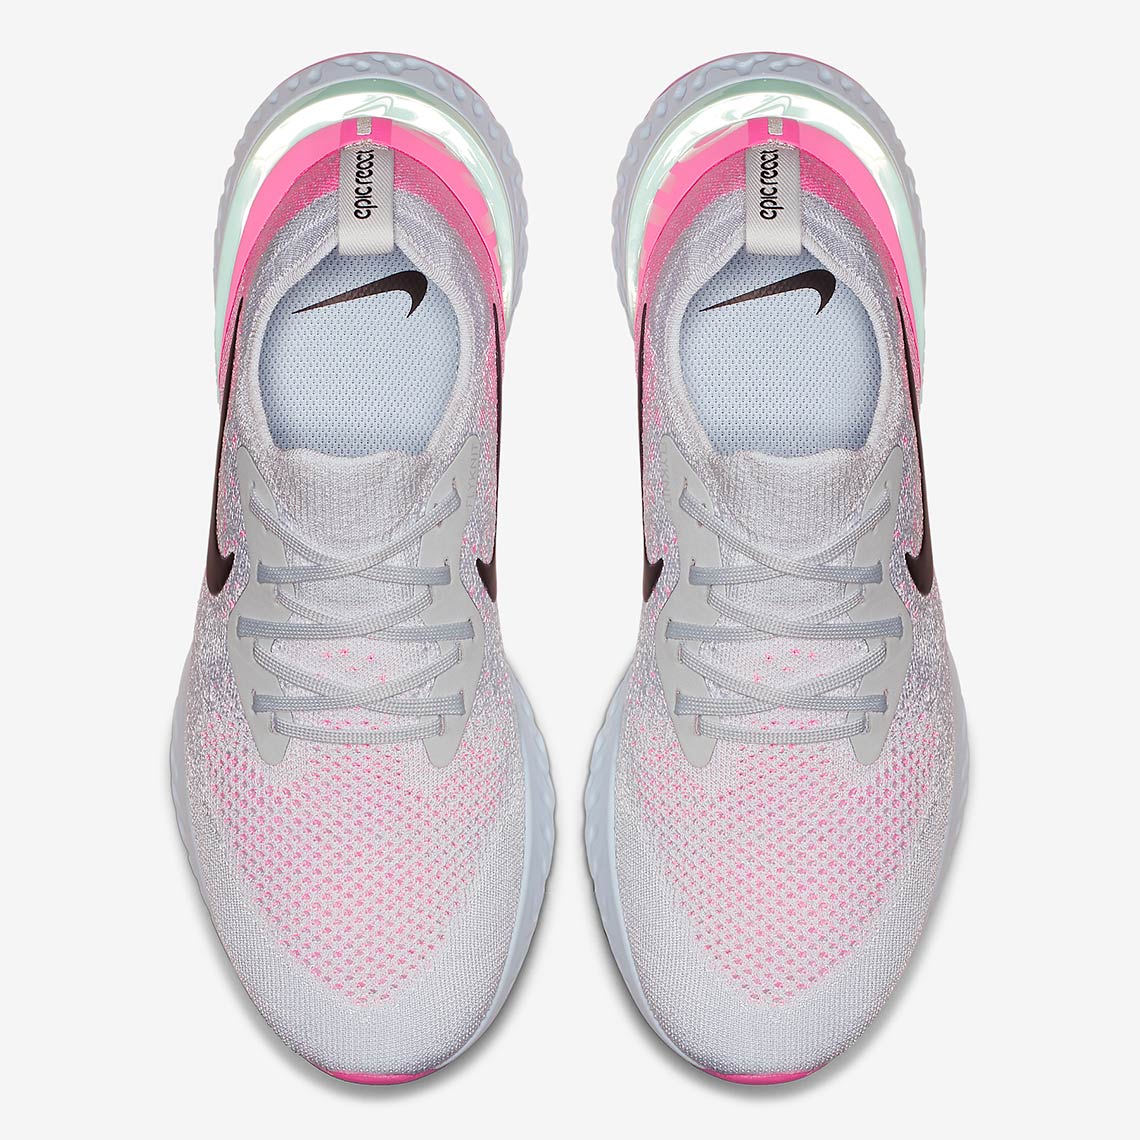 Nike Epic React White Pink Aq0067 007 3